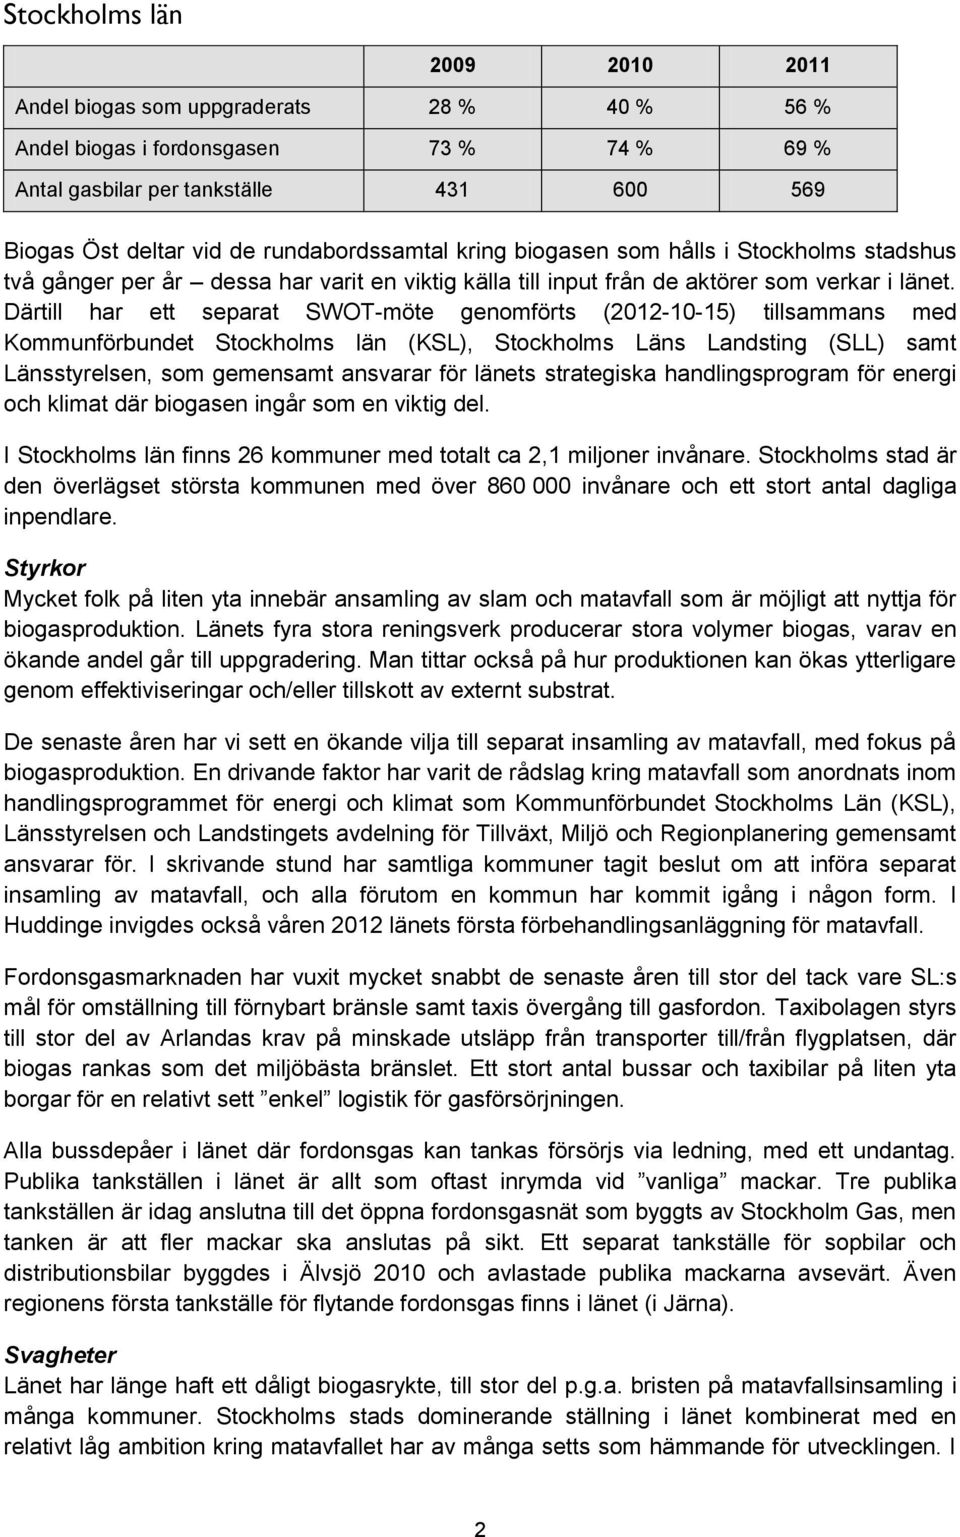 Därtill har ett separat SWOT-möte genomförts (2012-10-15) tillsammans med Kommunförbundet Stockholms län (KSL), Stockholms Läns Landsting (SLL) samt Länsstyrelsen, som gemensamt ansvarar för länets